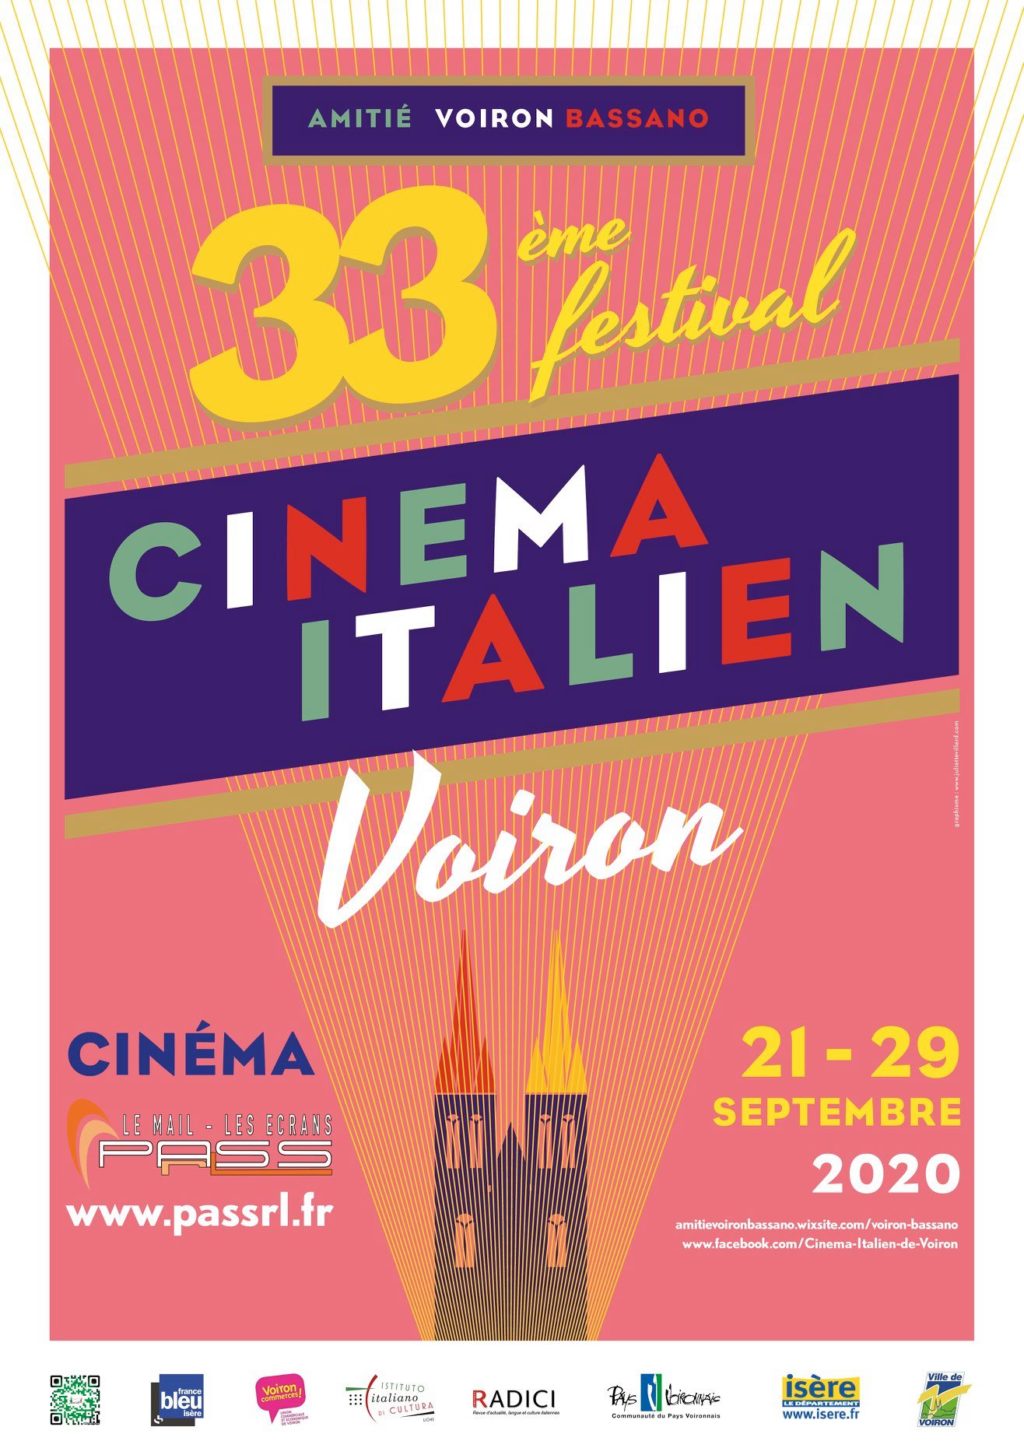 Voici notre nouvelle affiche pour annoncer la 33ème édition du Festival de ciné...